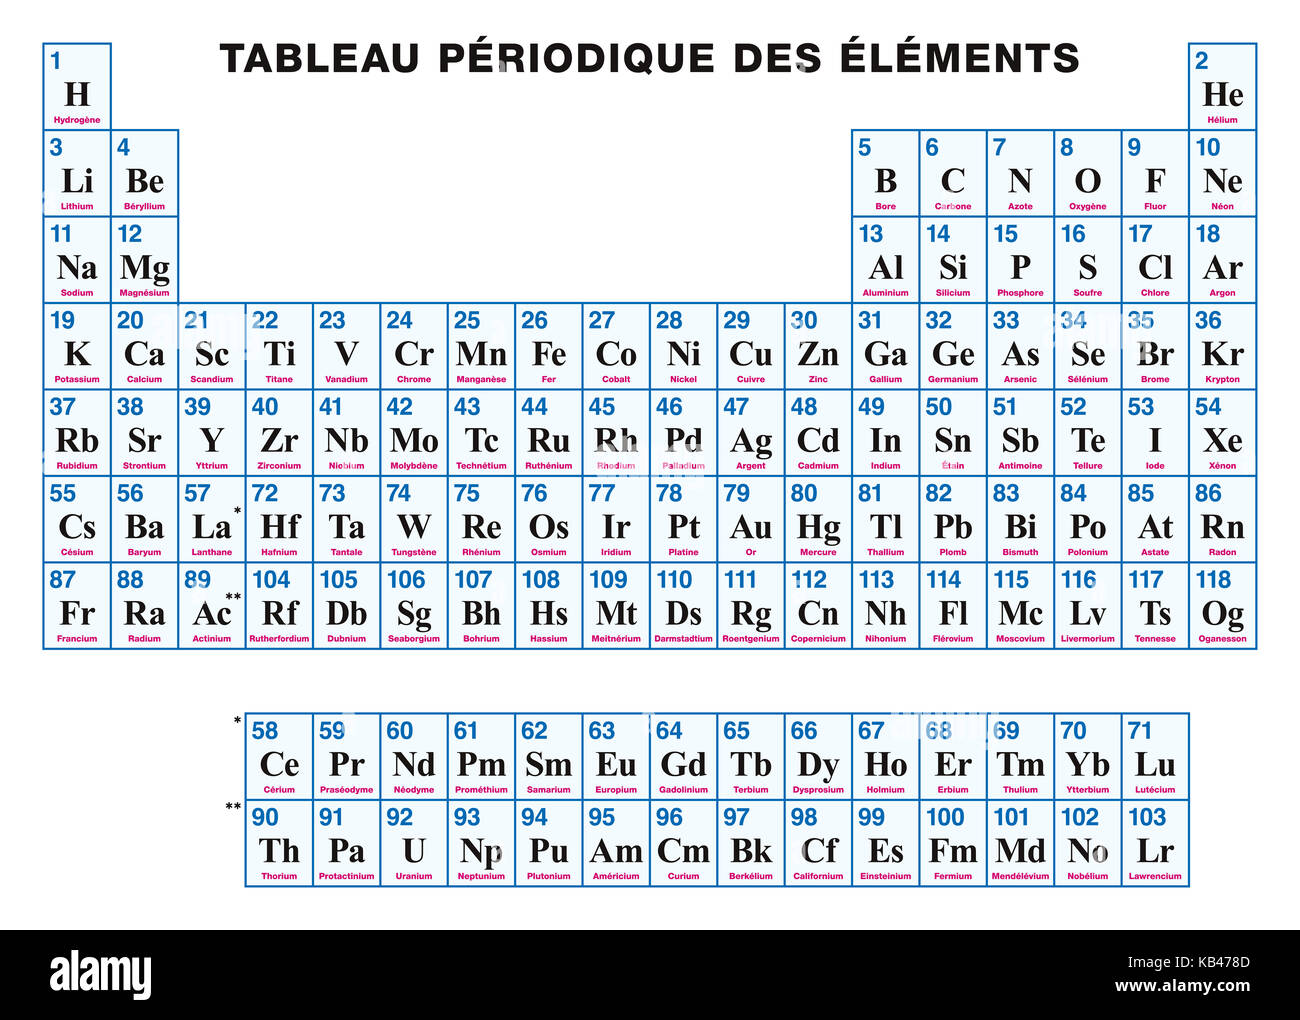 Tableau périodique des éléments. français. arrangement tabulaire des éléments chimiques avec leurs numéros atomiques, symboles et noms. 118 éléments confirmés. Banque D'Images